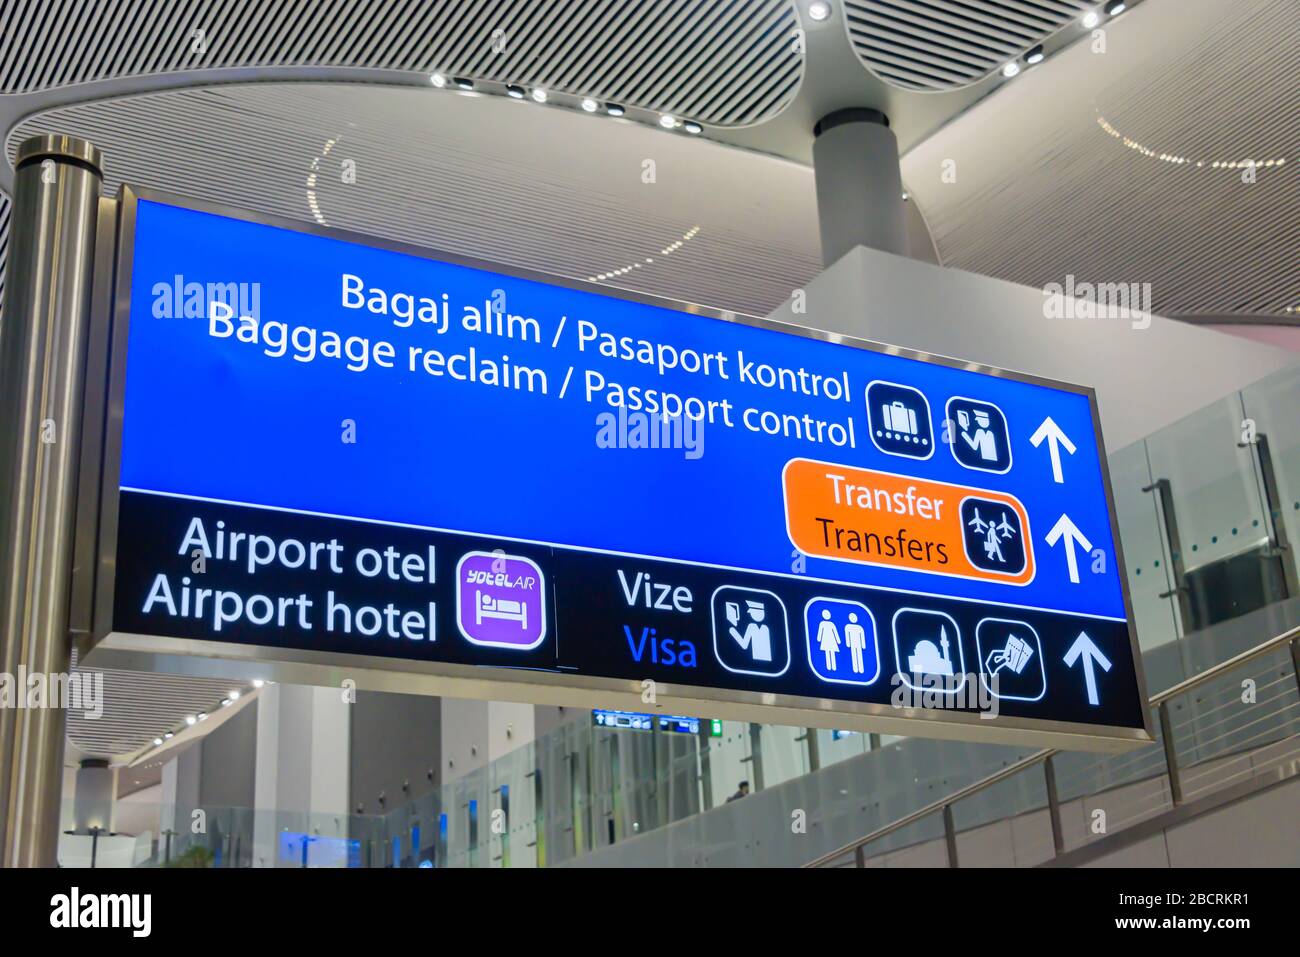 Signez à l'aéroport d'Istanbul, en Turquie, avec des panneaux indiquant le contrôle des passeports, la récupération des bagages, les transferts et l'office des visas touristiques. Banque D'Images